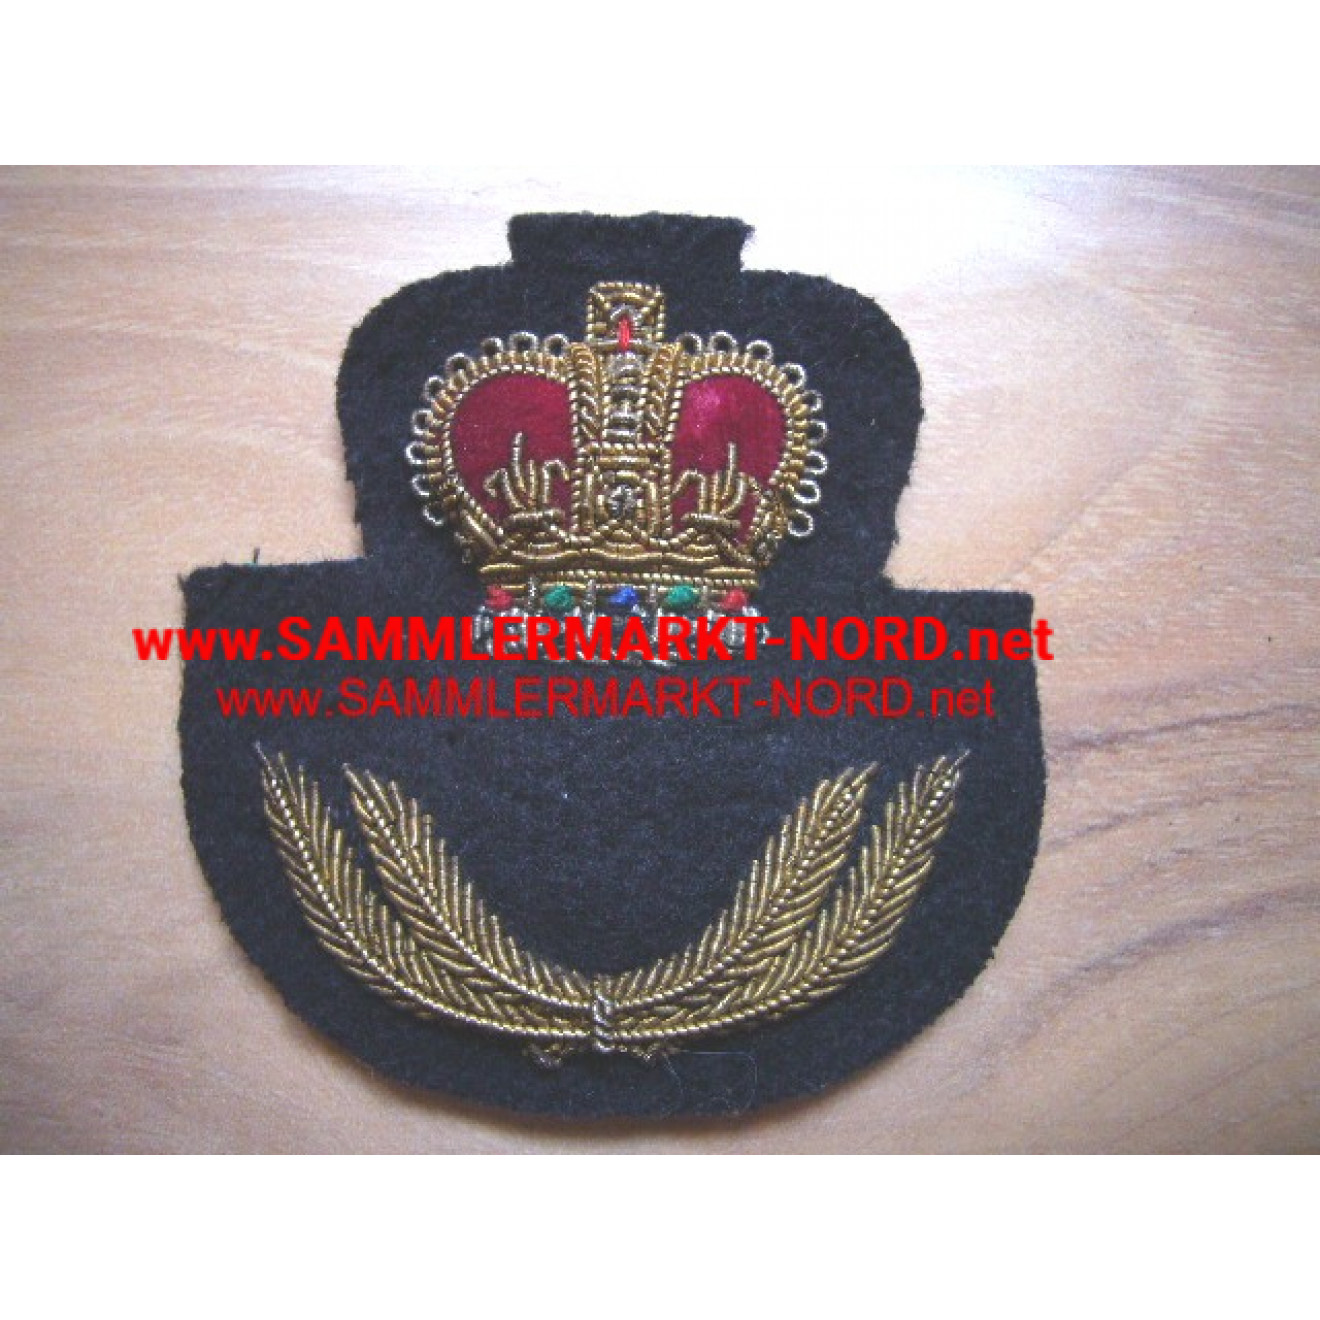 Britische Marine - Mützenabzeichen für Offiziere